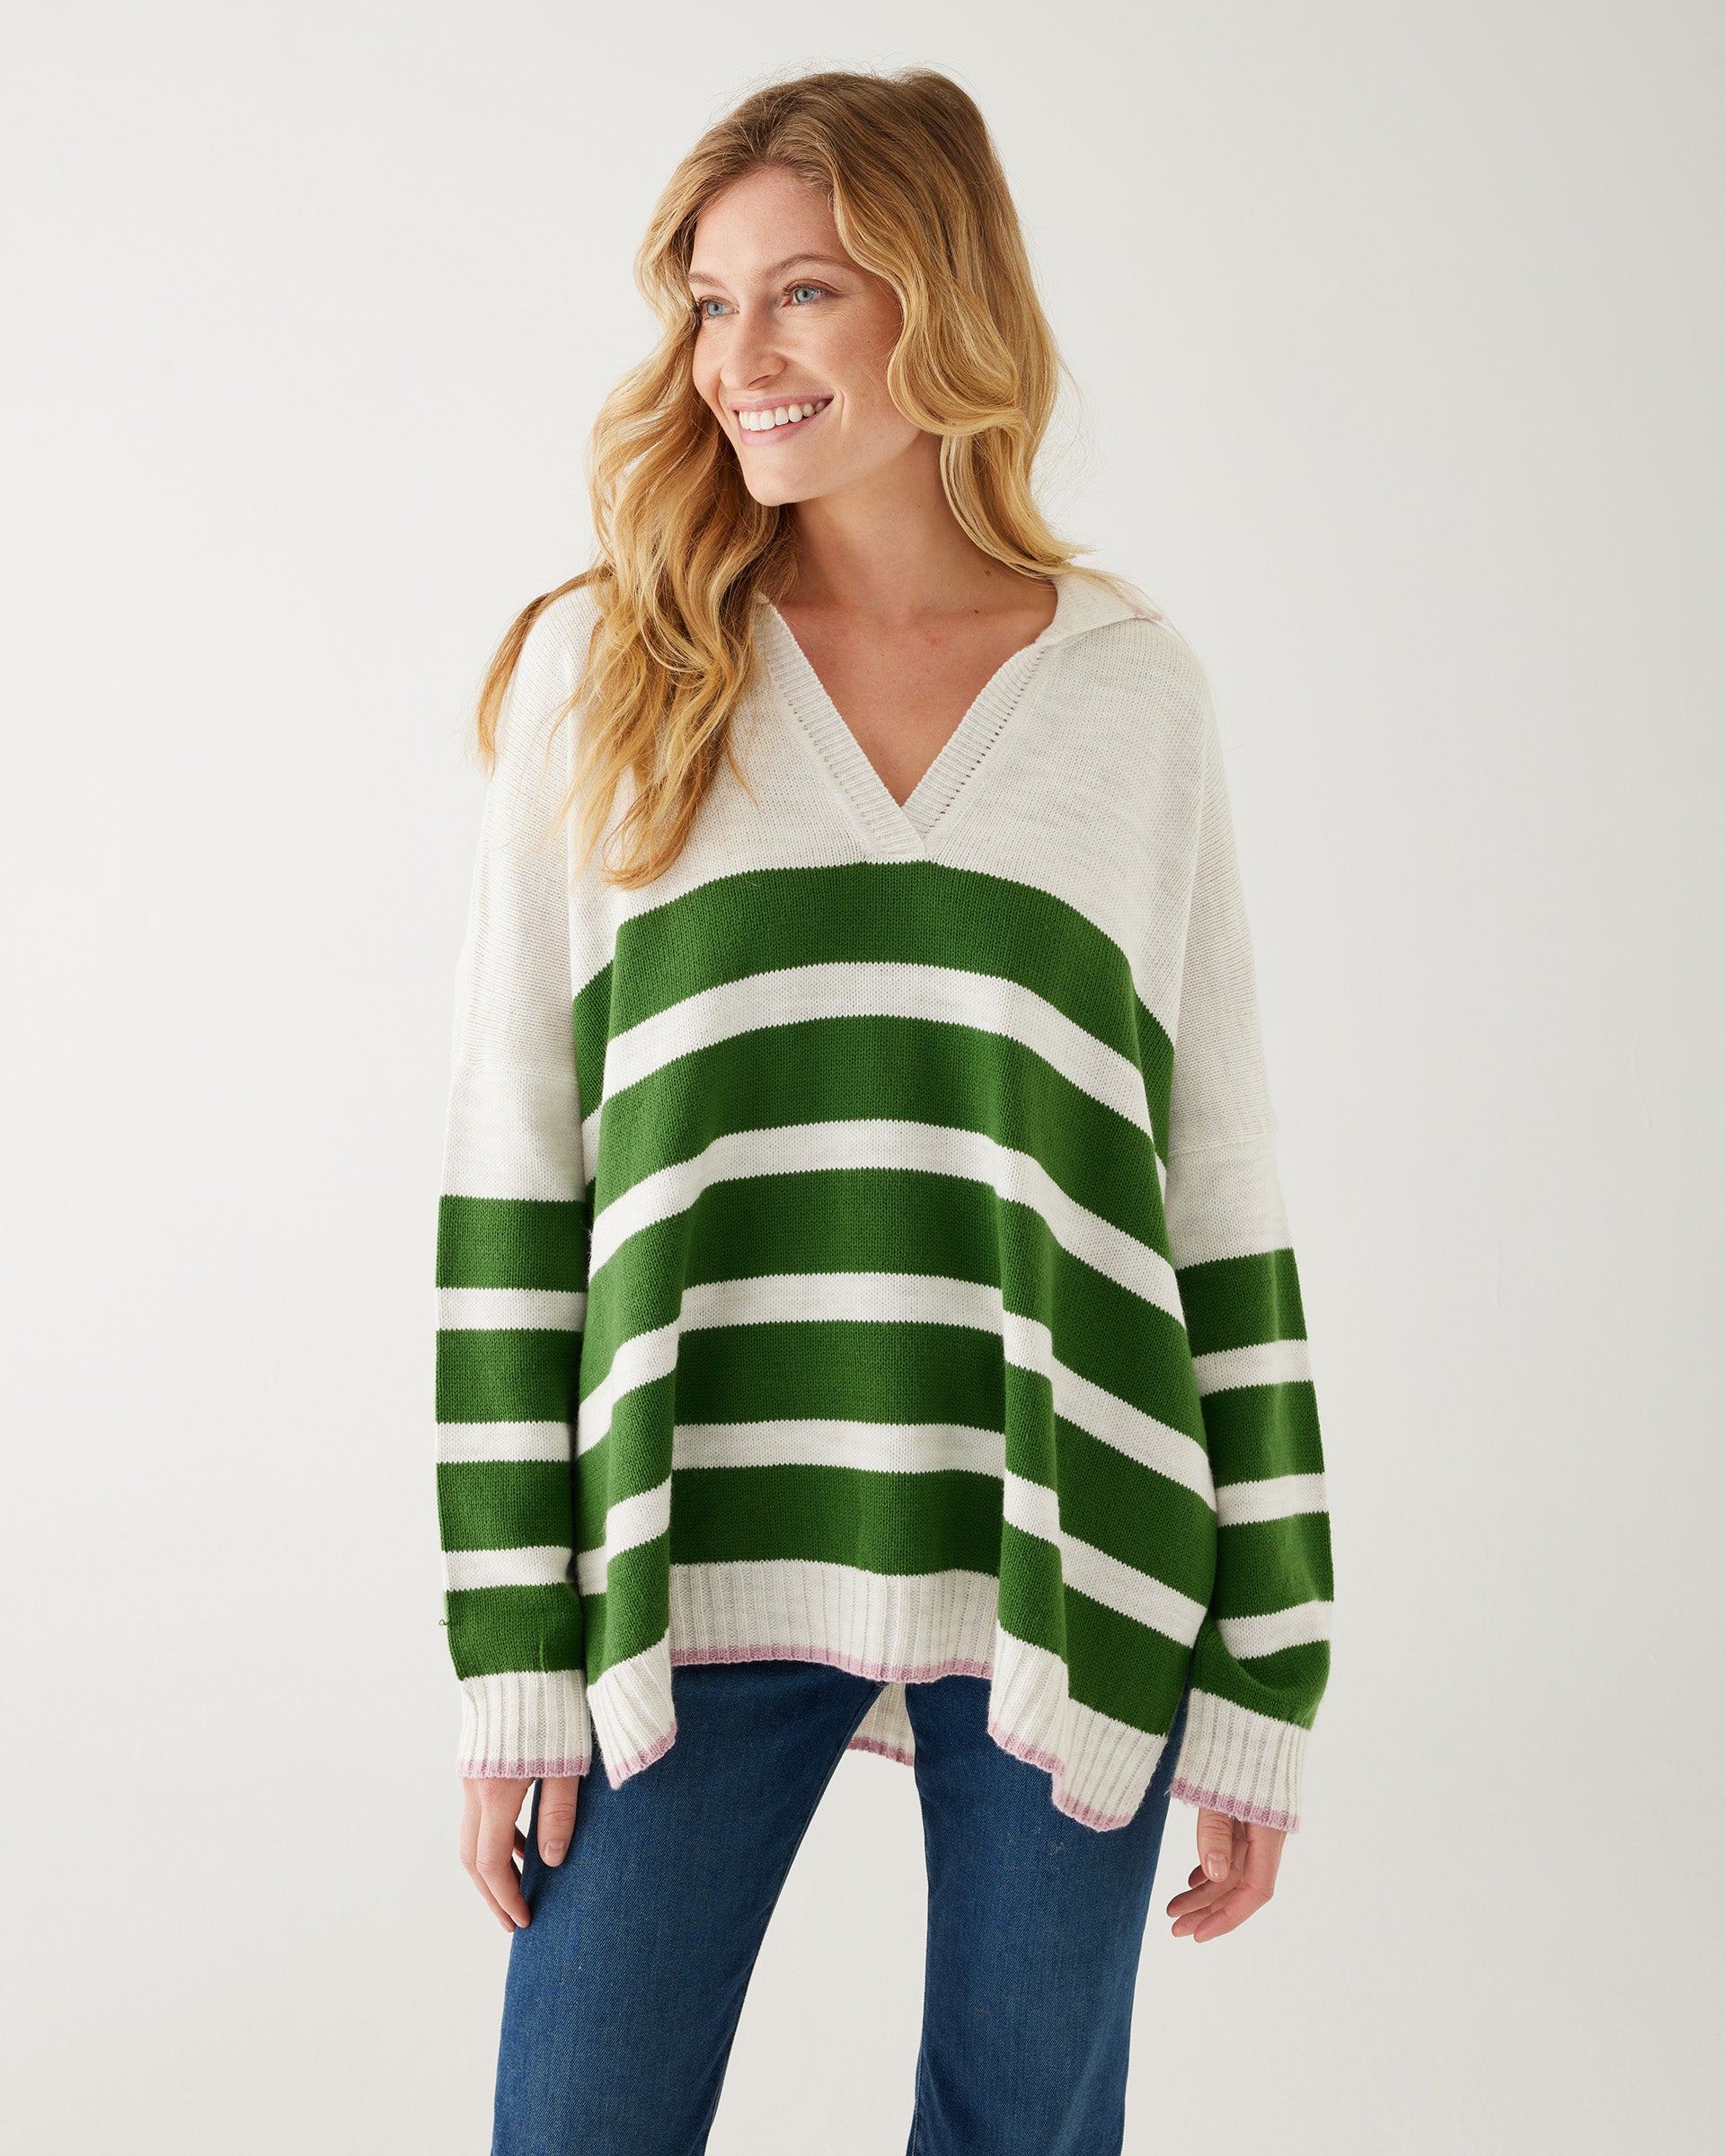 woman showcasing mersea marina polo sweater in green and sea salt stripe